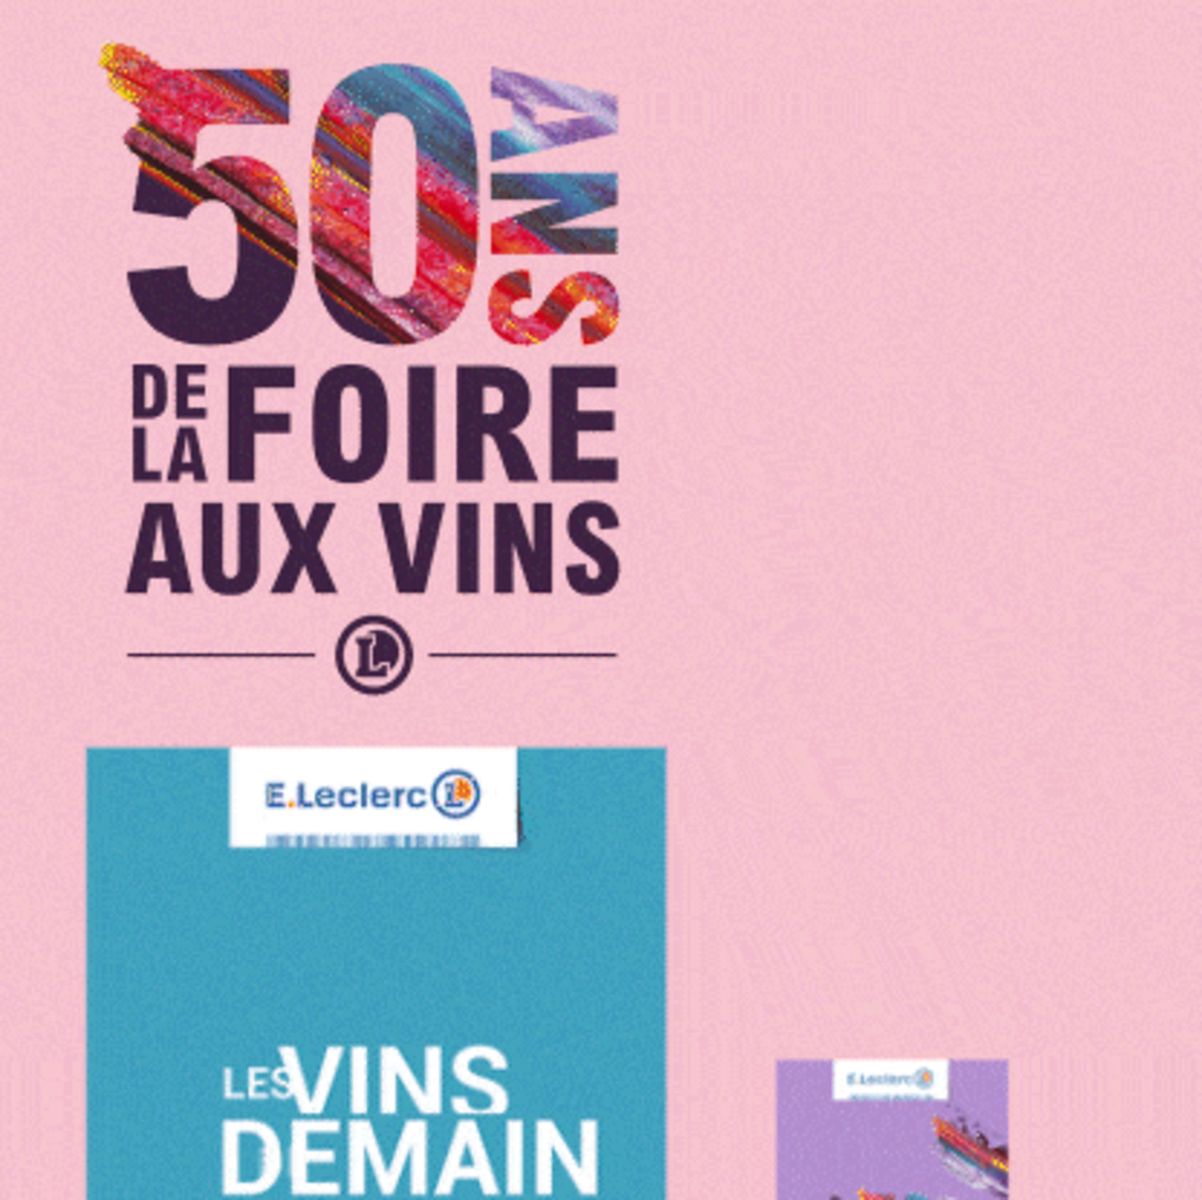 Catalogue Foire Aux Vins - Mixte, page 01150